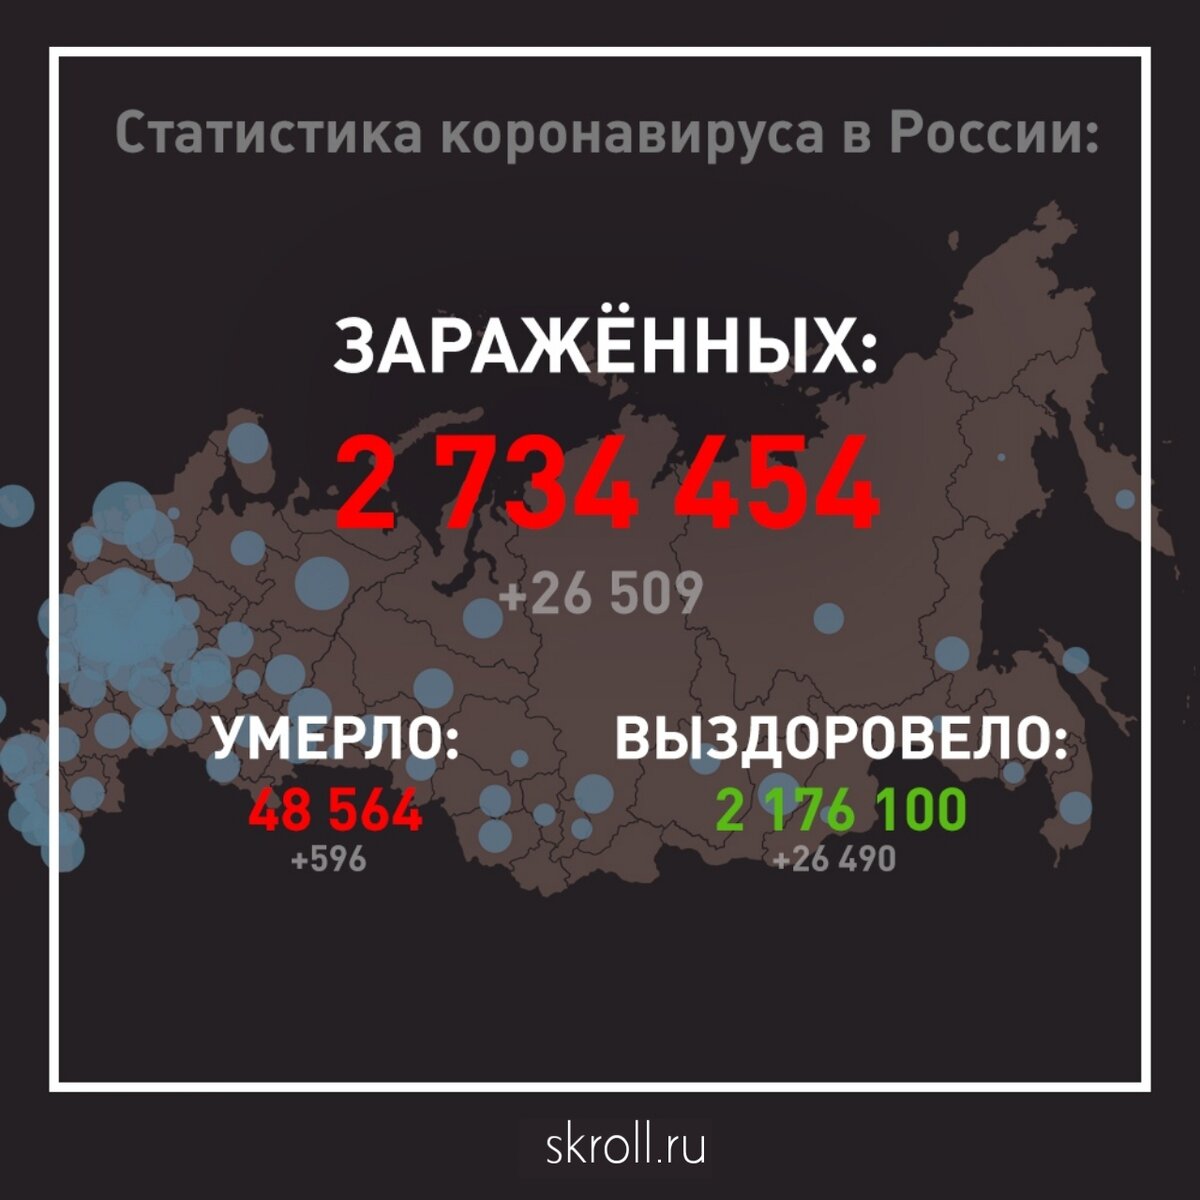 В России за сутки выявили 26 509 новых случаев коронавируса в 85 регионах.